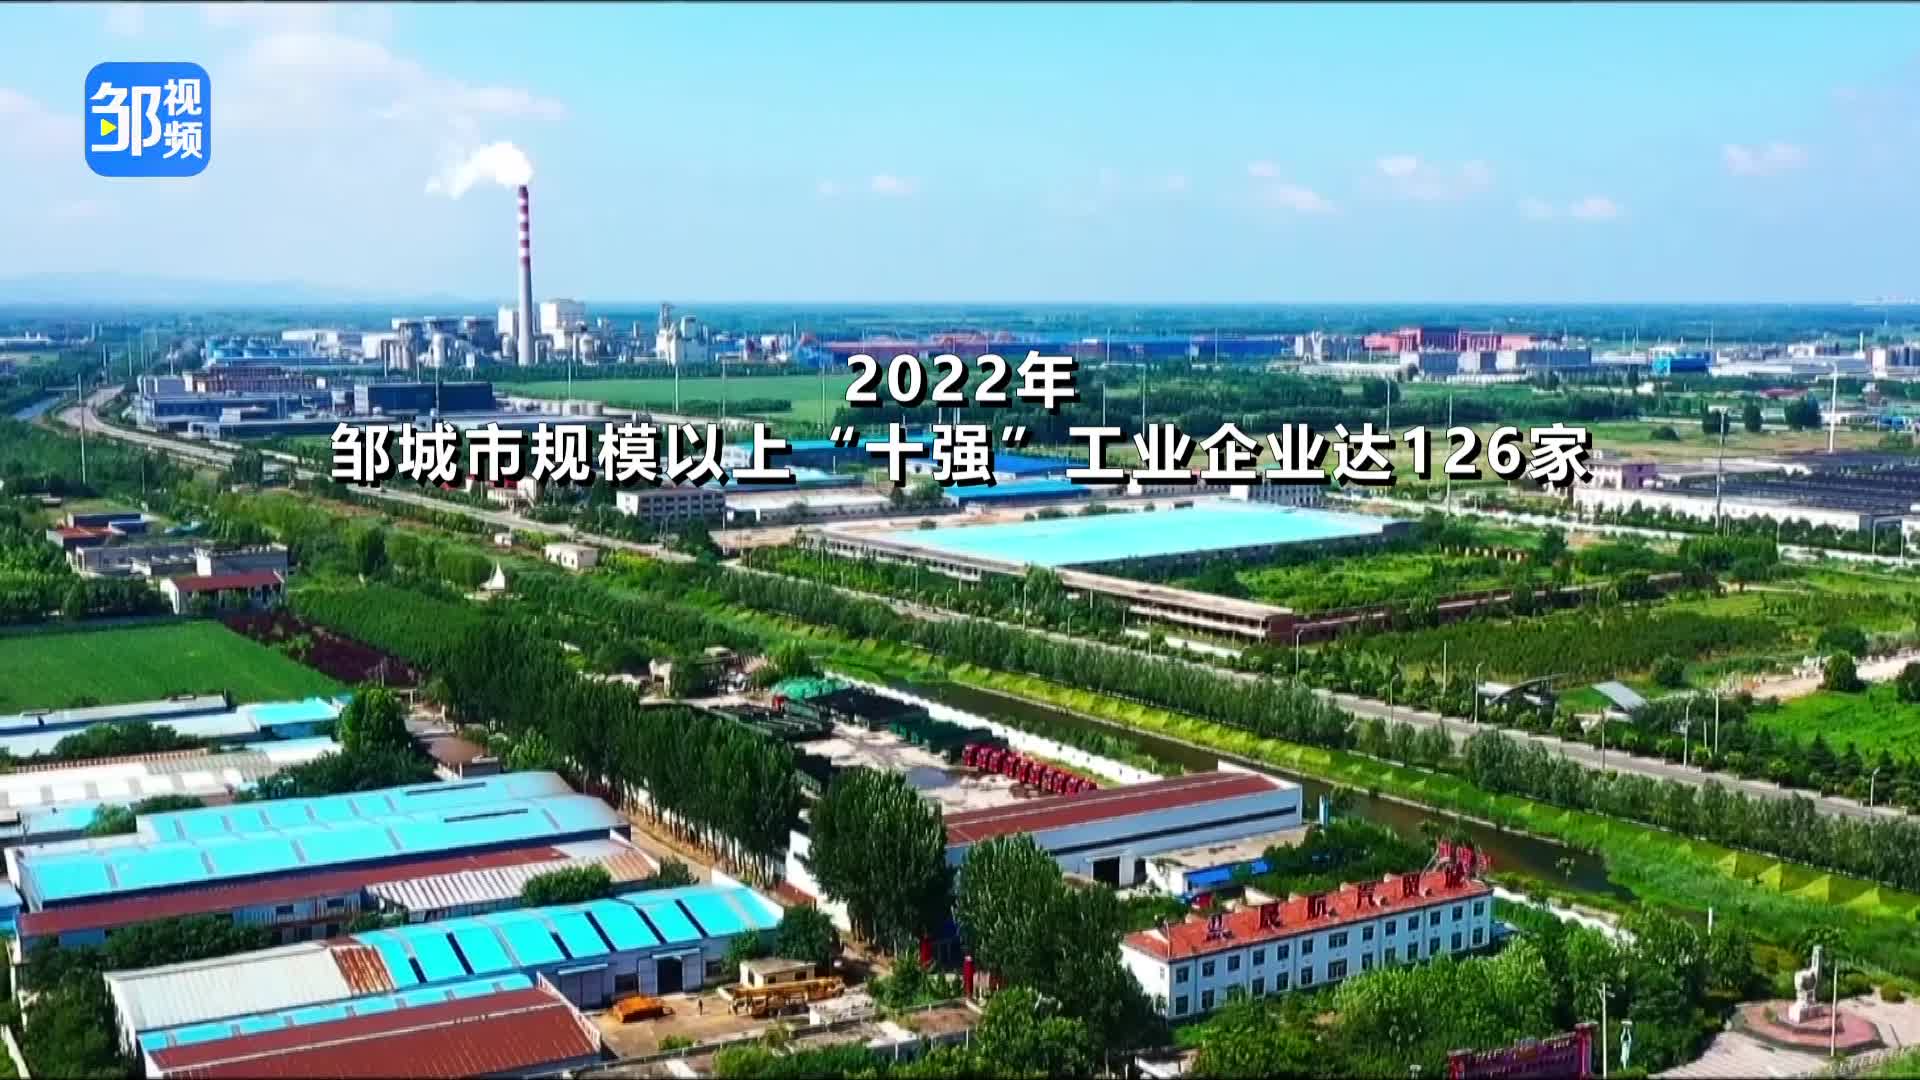 【邹视频·新闻】39秒| 2022年邹城市规模以上“十强”工业企业达126家